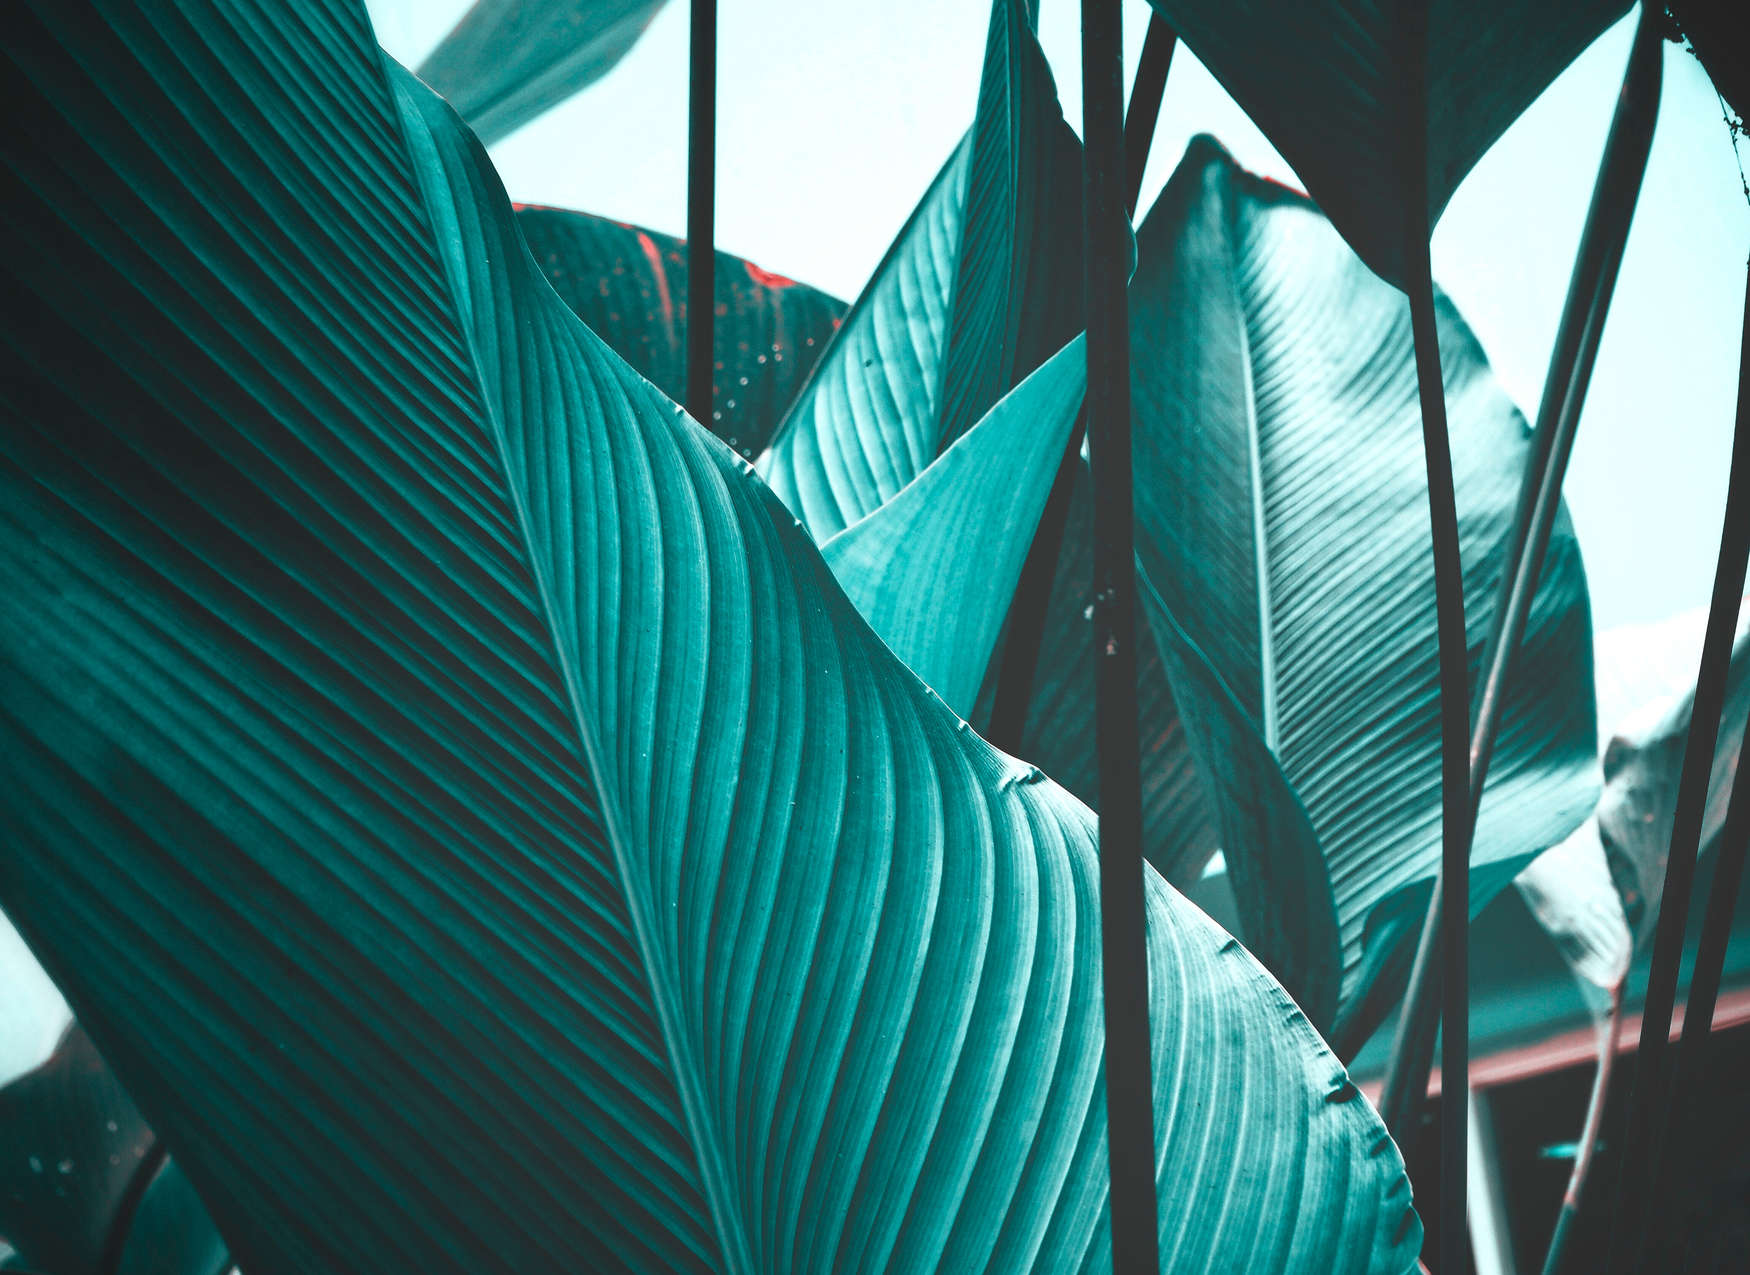             Fotomurali foglie turchese tropicale - blu, nero
        